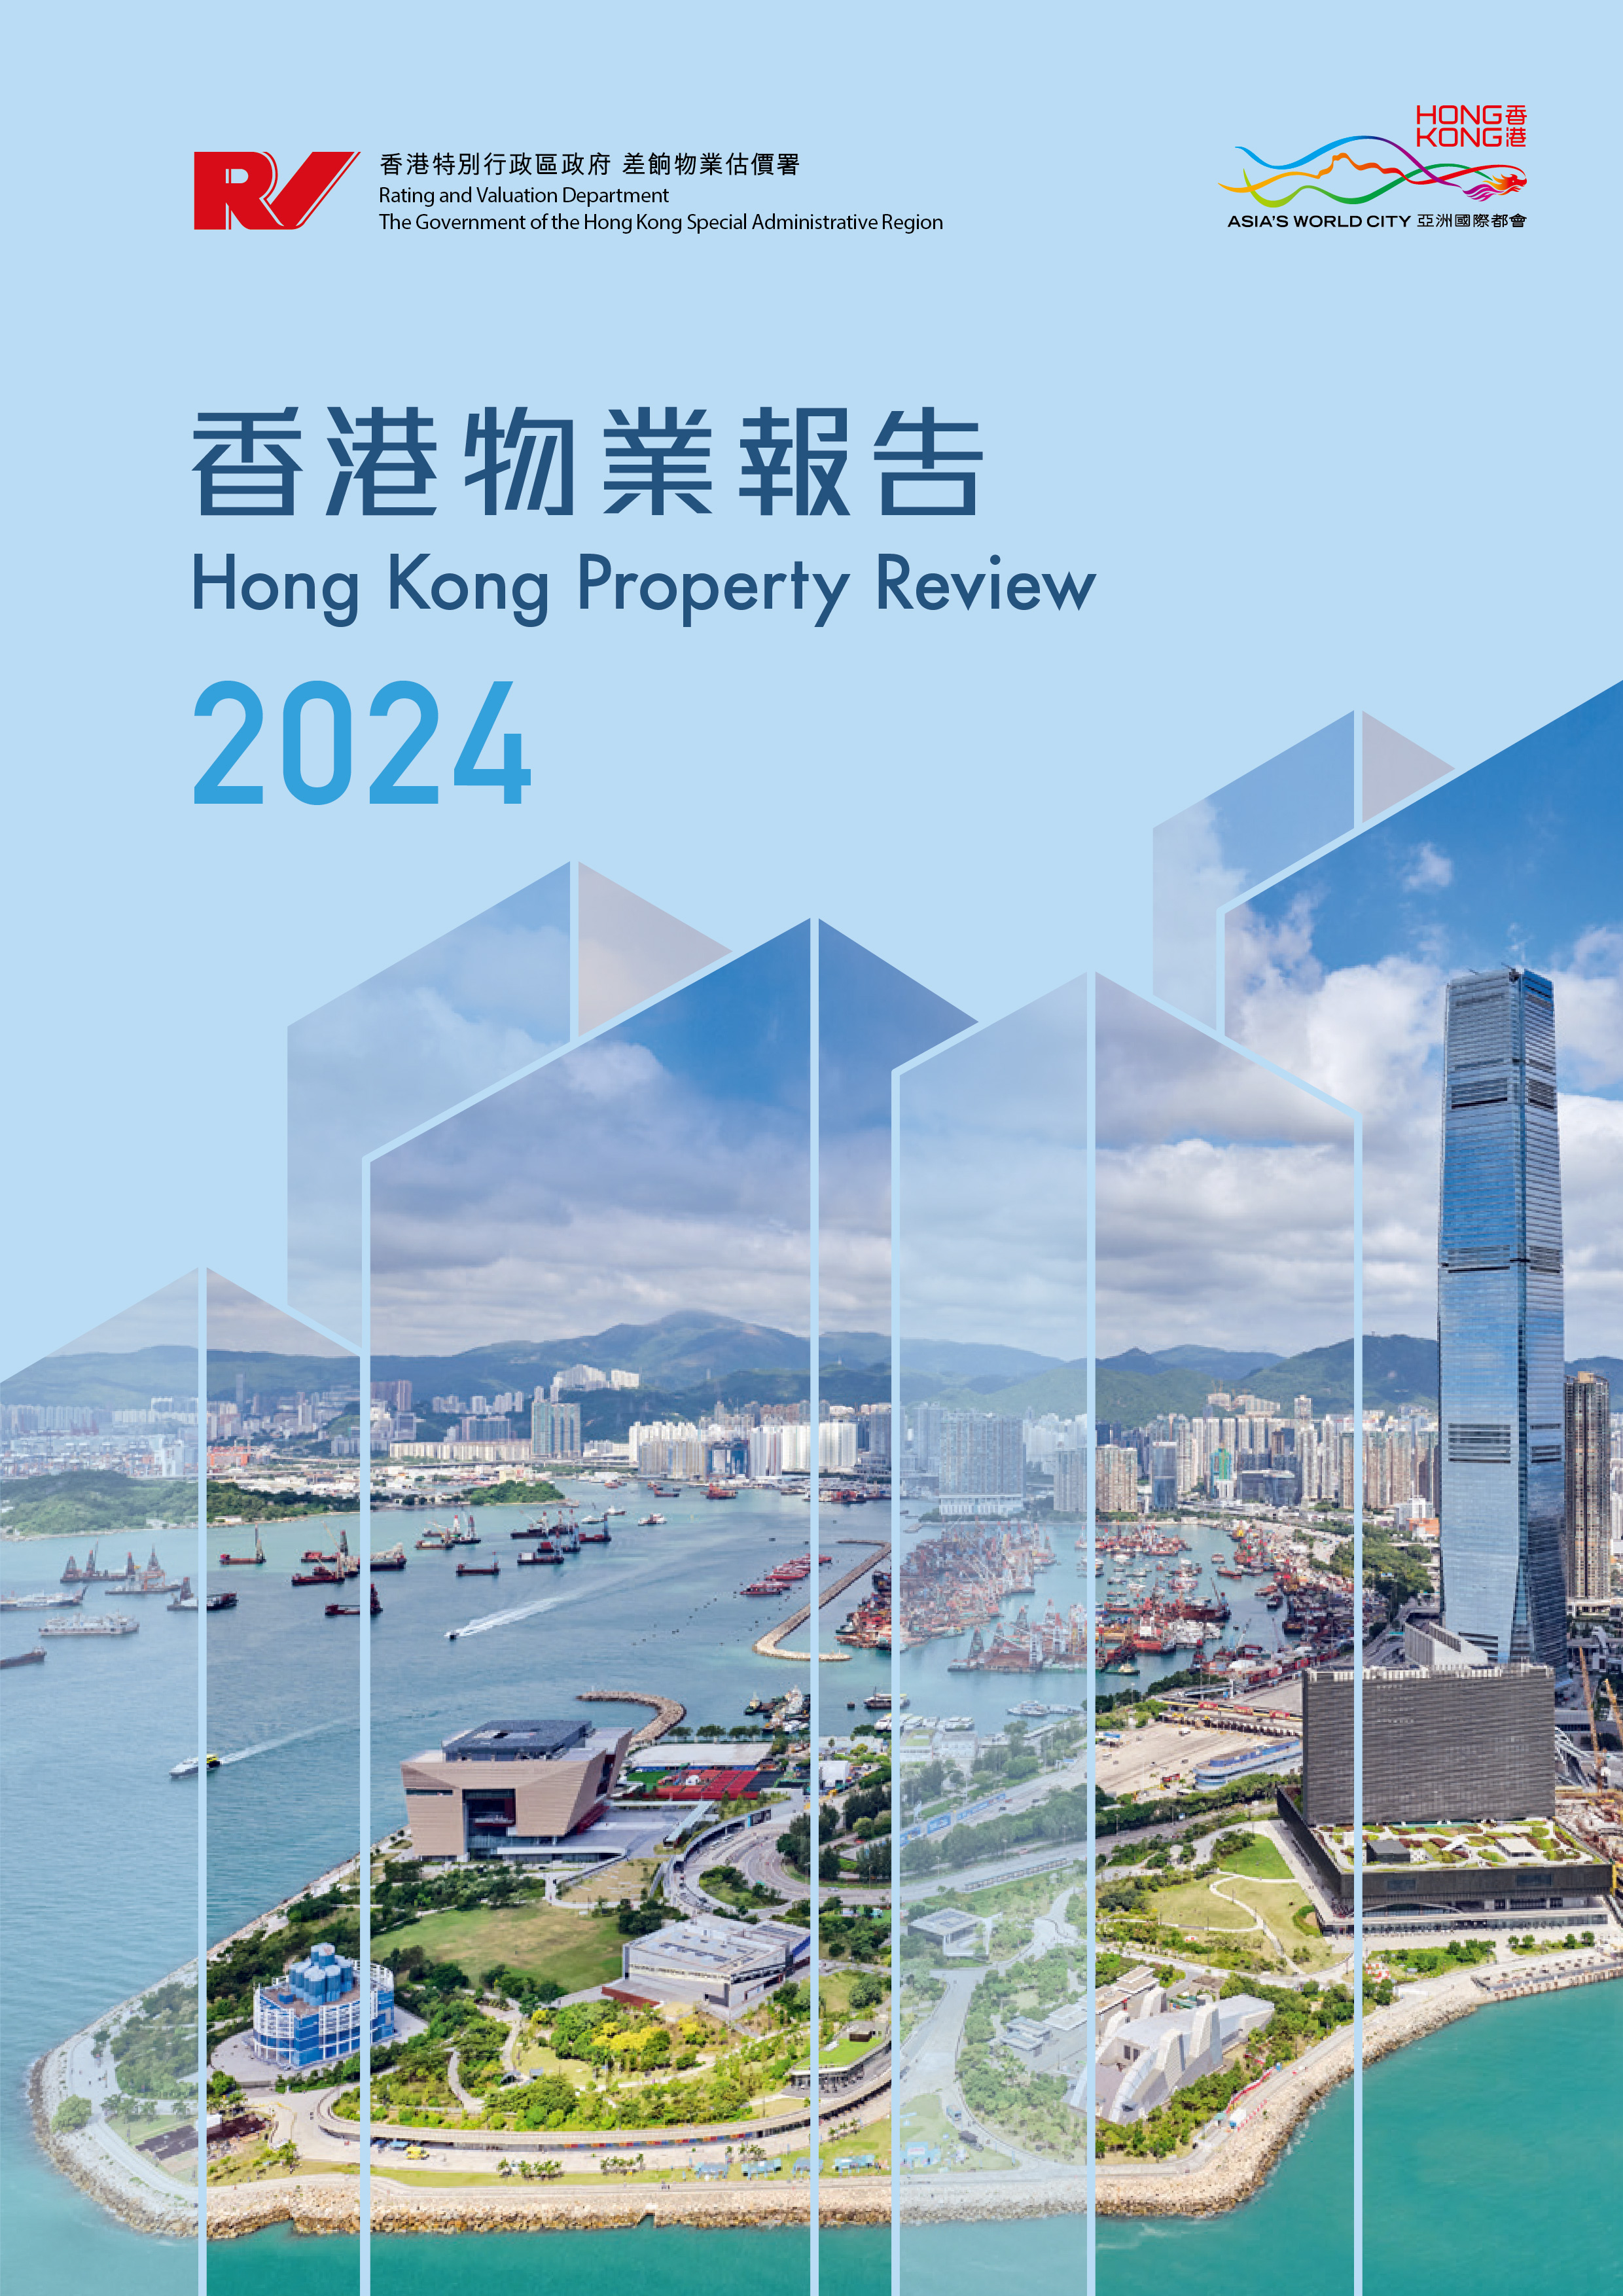 Hong Kong Property Review 2024